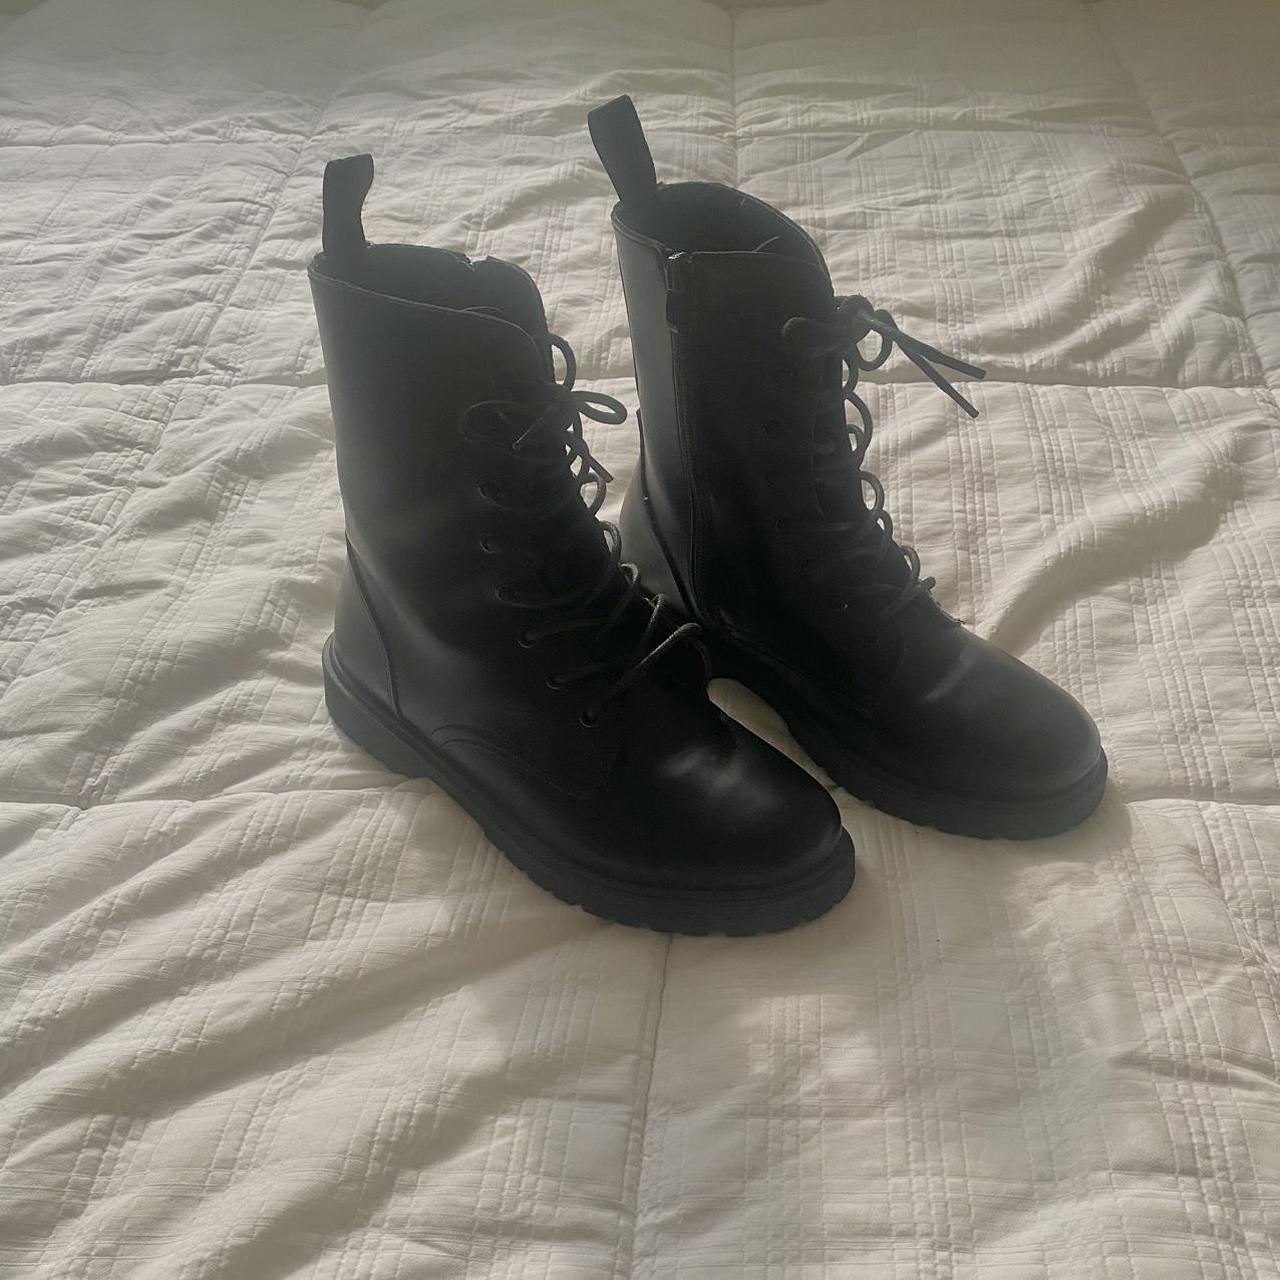 black lace up combat boots - Depop